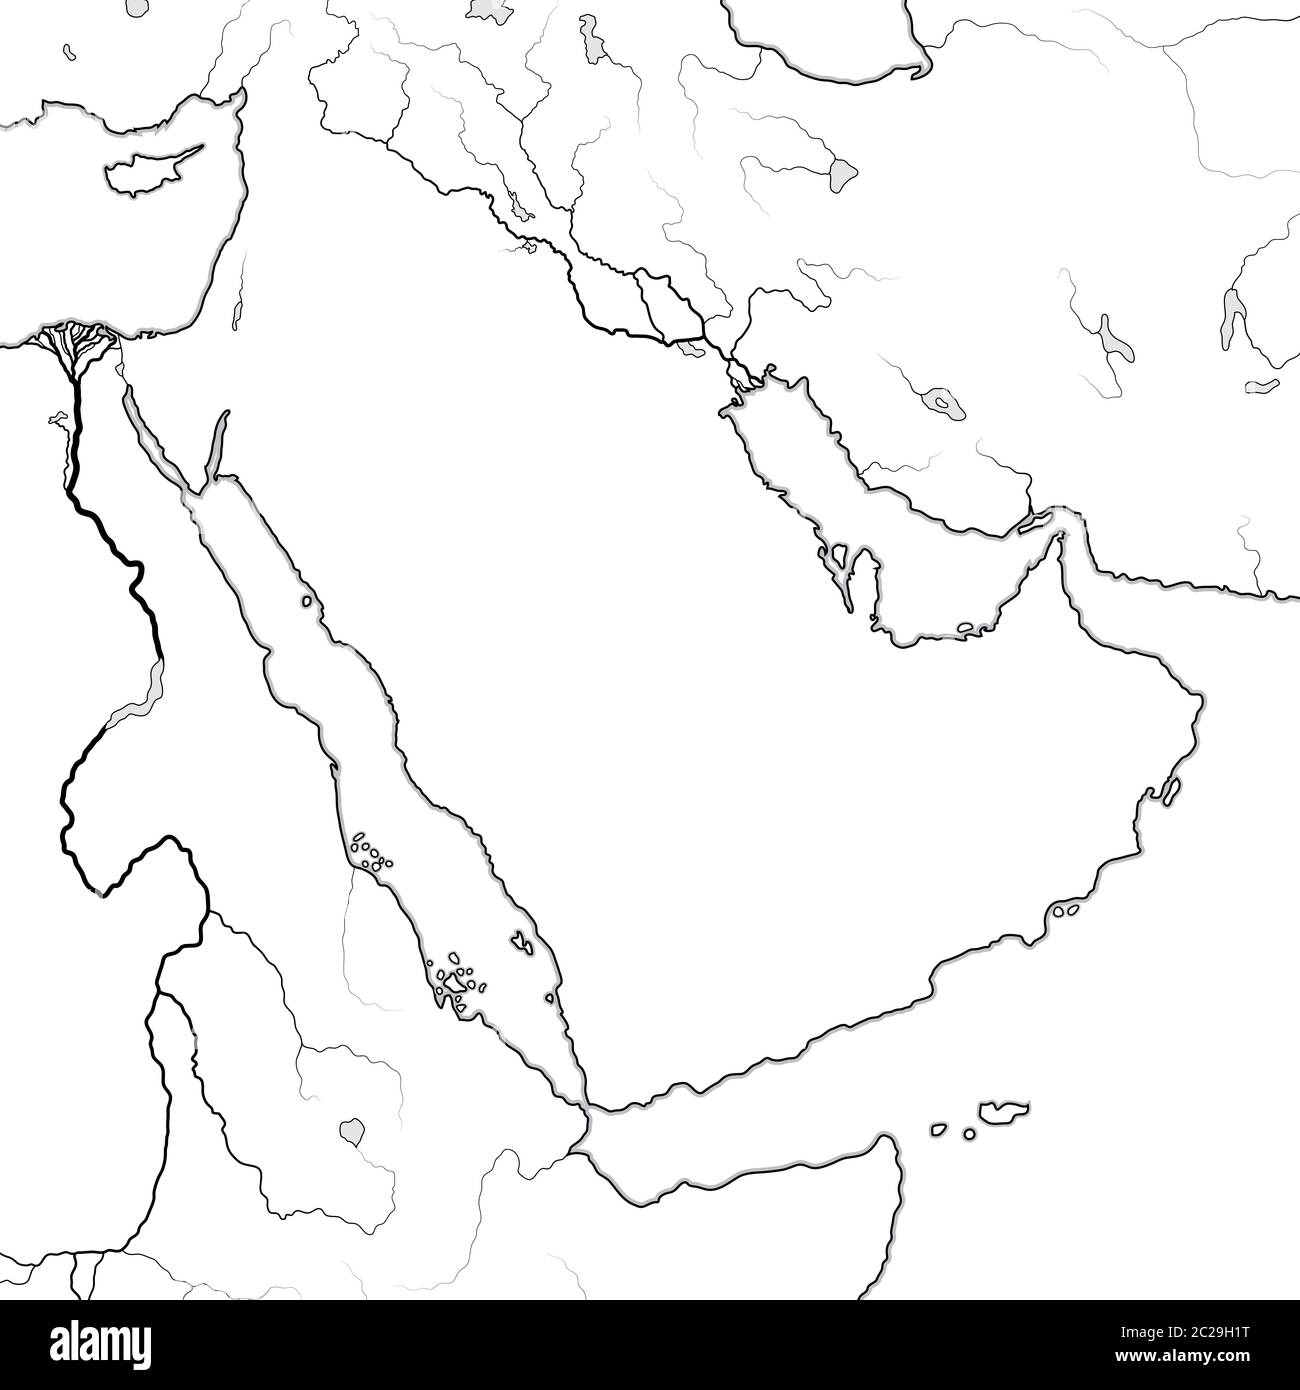 Mappa mondiale DELLA PENISOLA ARABICA: Medio Oriente, Arabia Saudita, Iraq, Golfo Persico, Emirati. Grafico geografico. Foto Stock